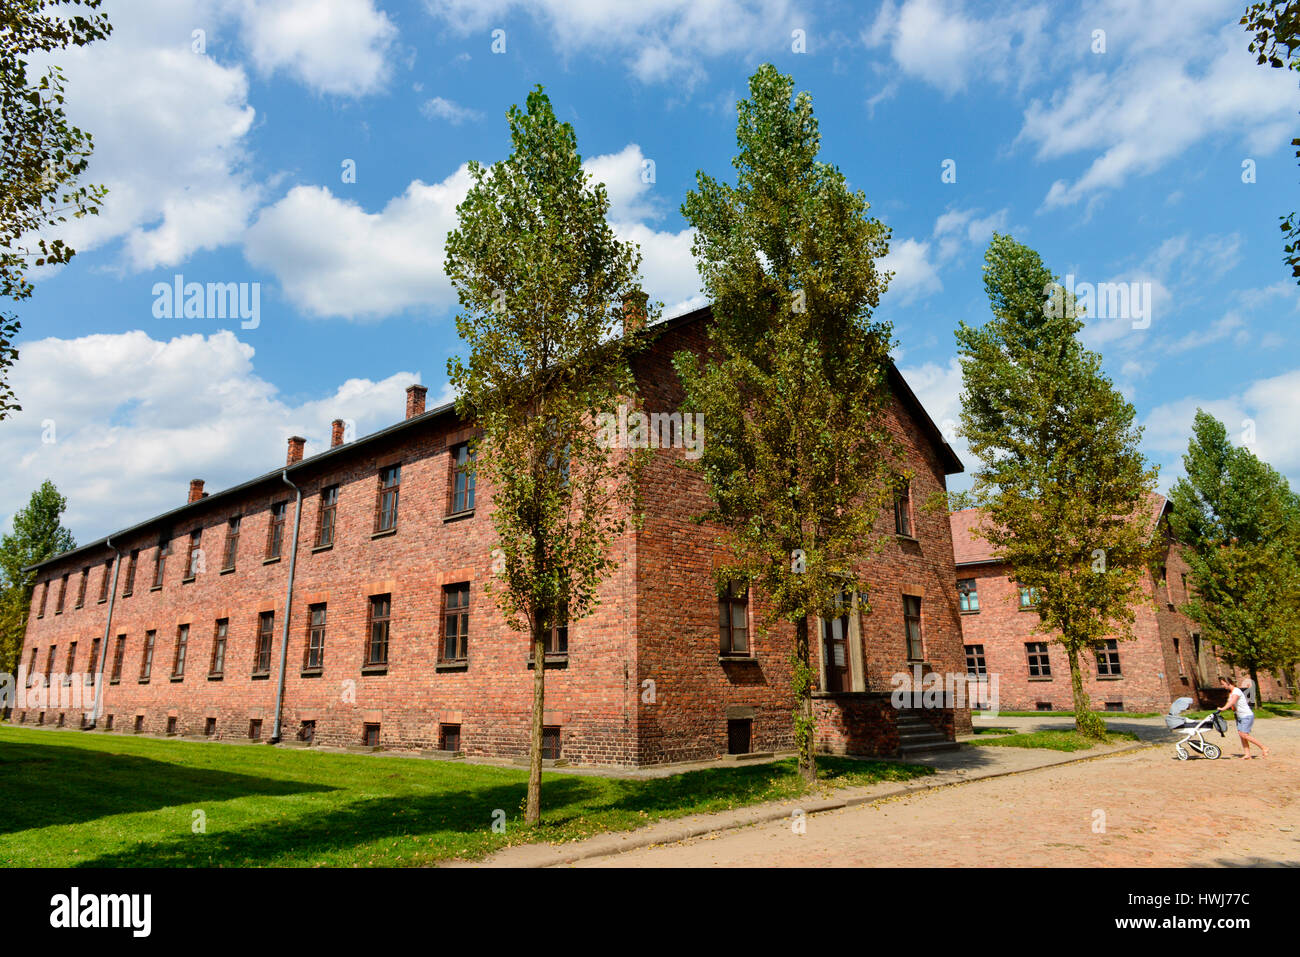 Lagergebaeude, Stammlager I, Konzentrationslager, Auschwitz-Birkenau, Auschwitz, Polen Stock Photo